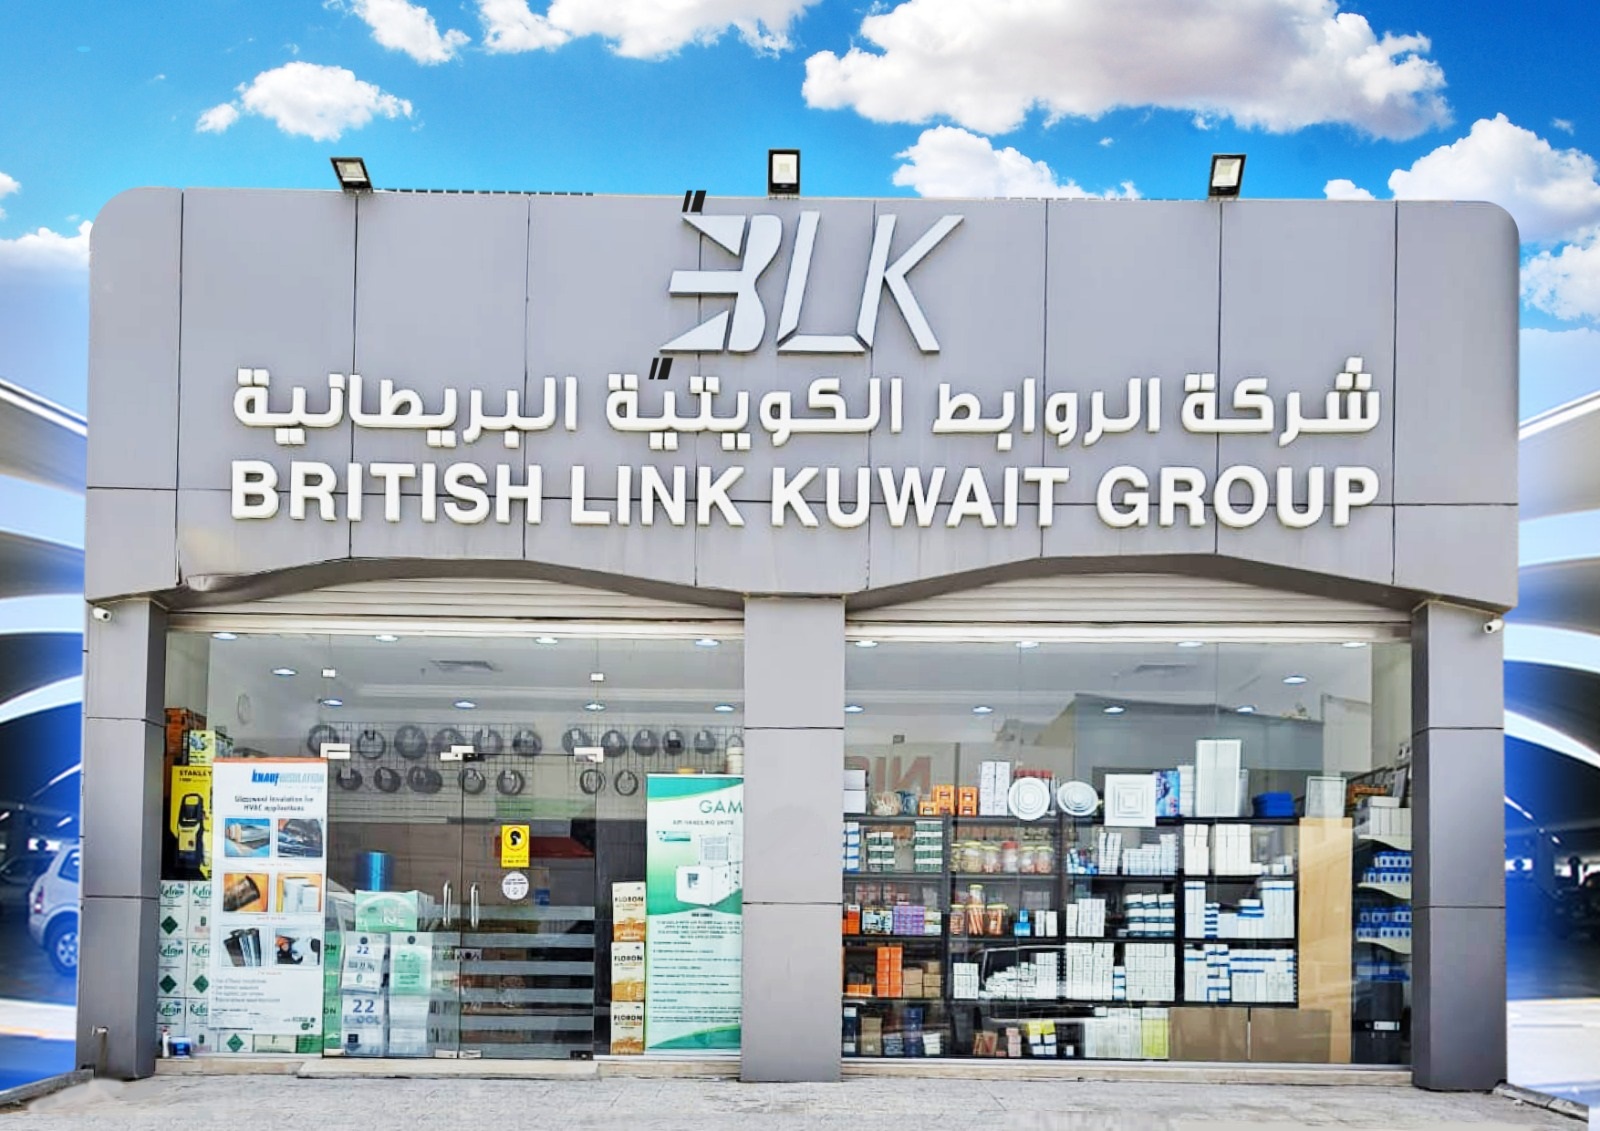 British Link Kuwait